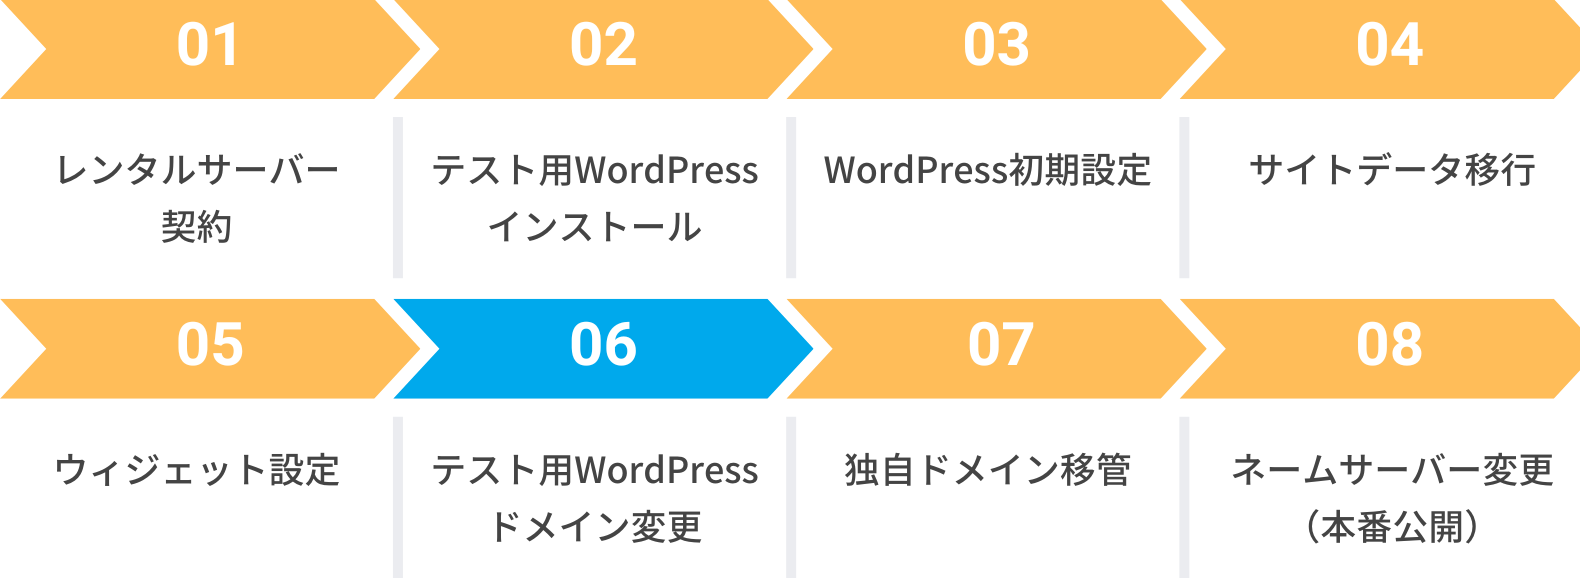 テスト用WordPressのドメイン変更